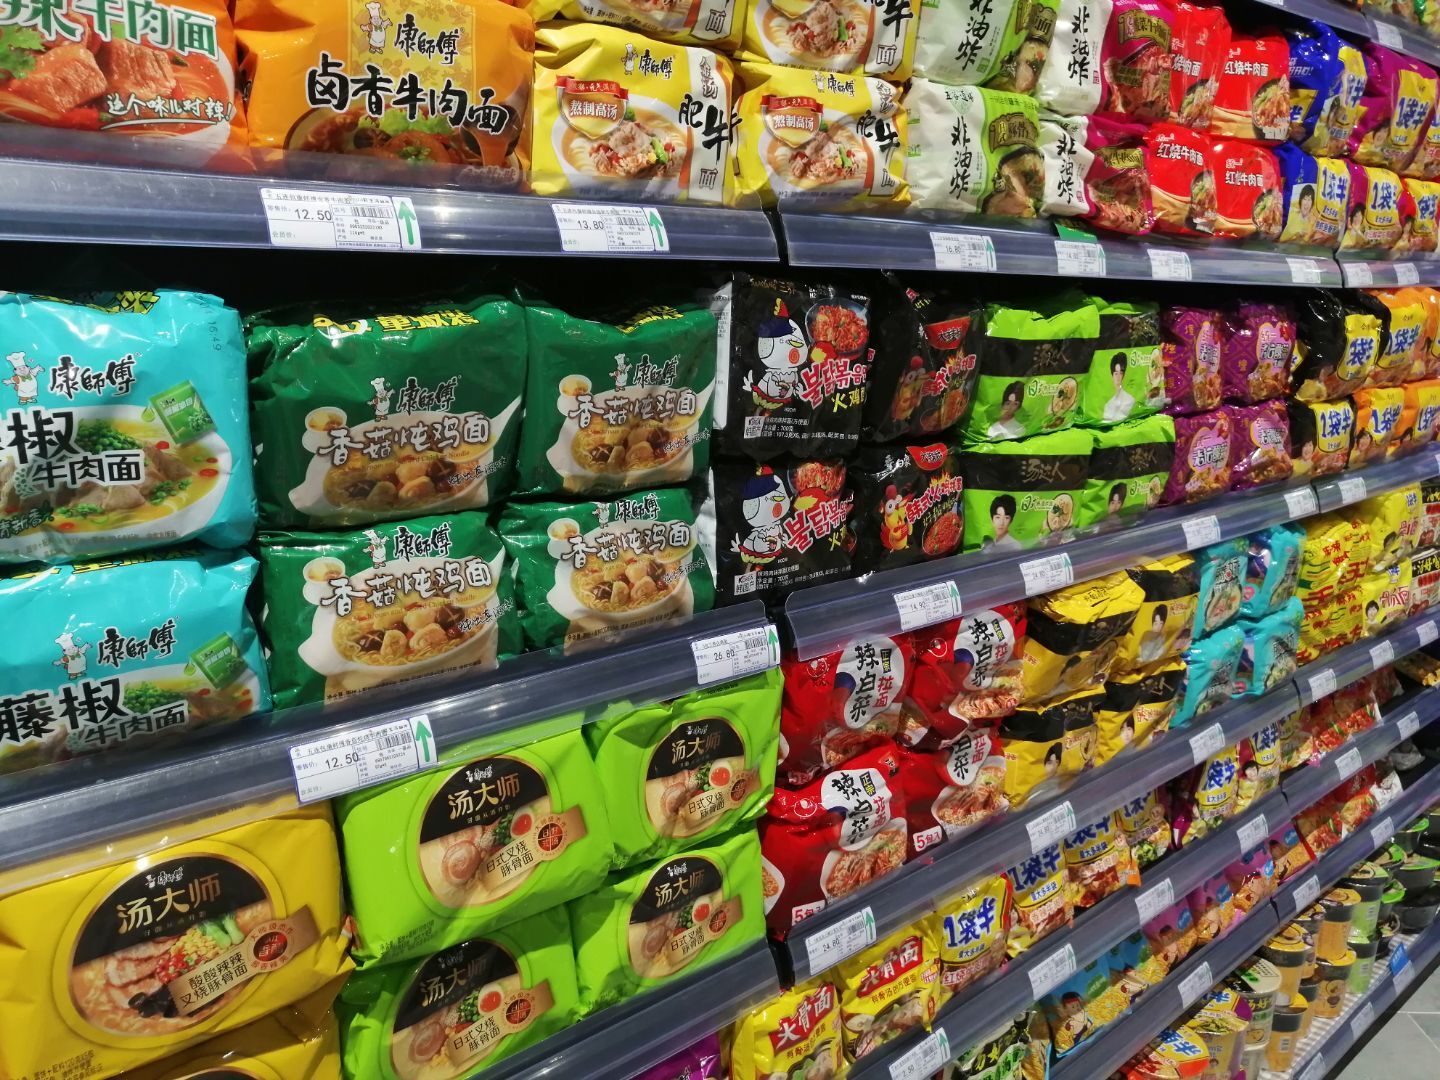 安庆11月份CPI同比上涨2.1% 食品价格上涨1.6%